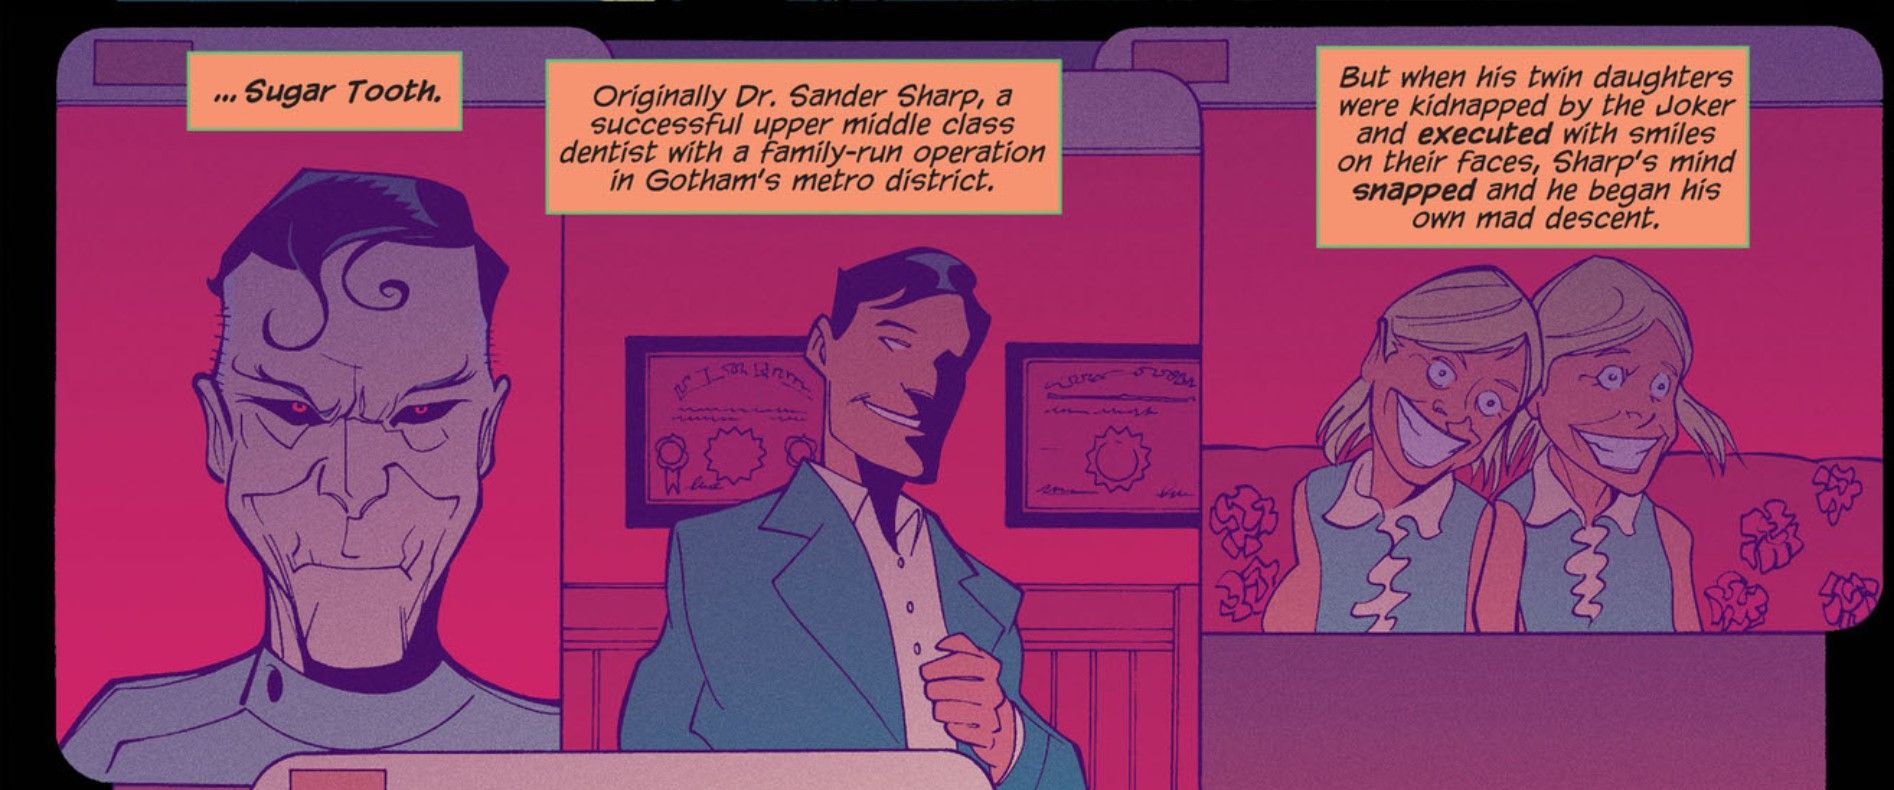 Joker Sugar Tooth Origin DC Comics